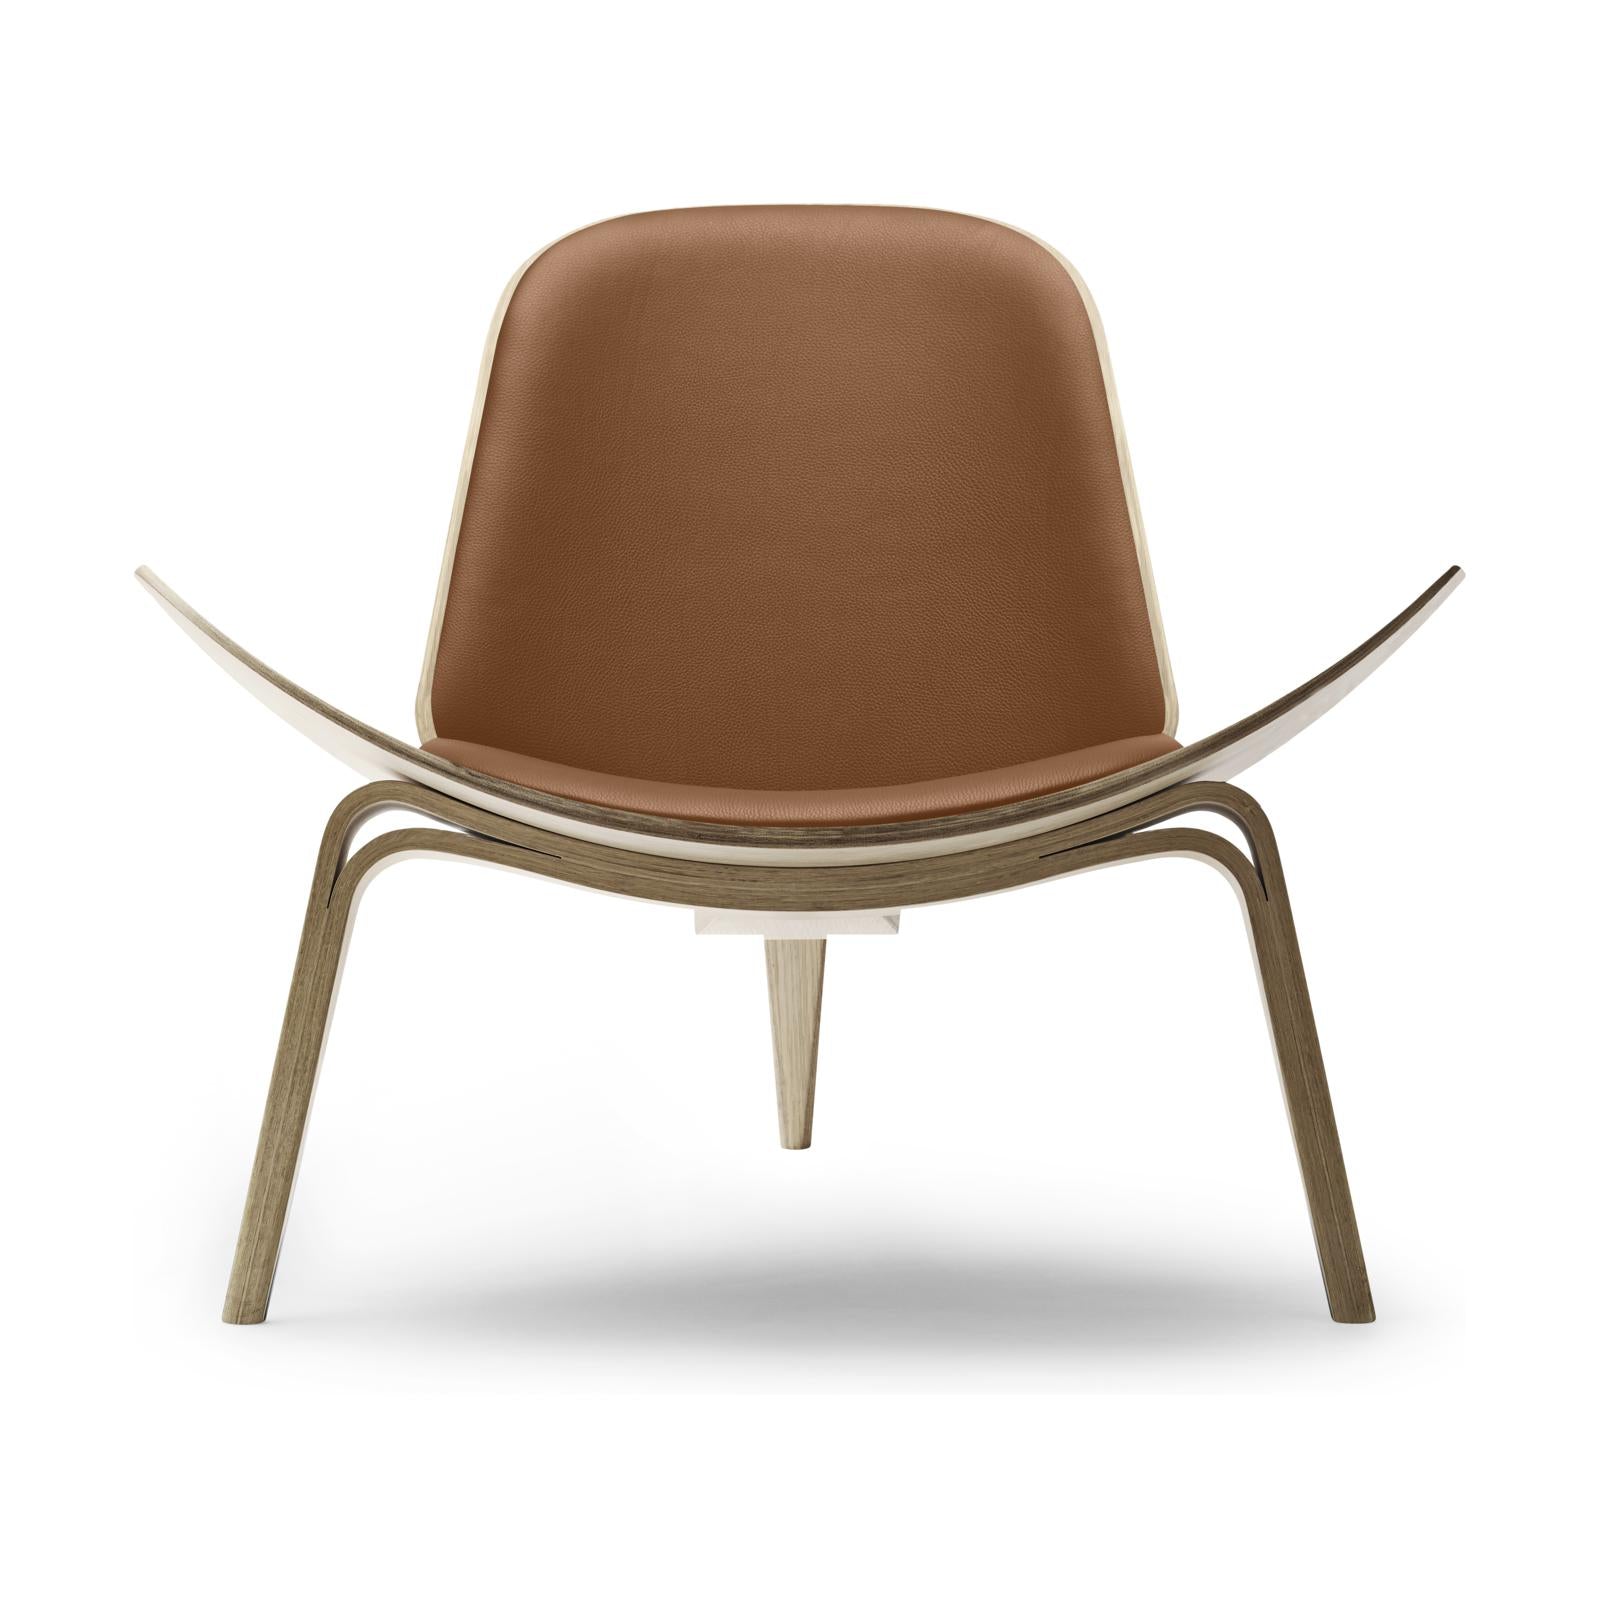 Shell židle Carl Hansen CH07, bílá naolejovaná dubová/hnědá kůže Thor 307